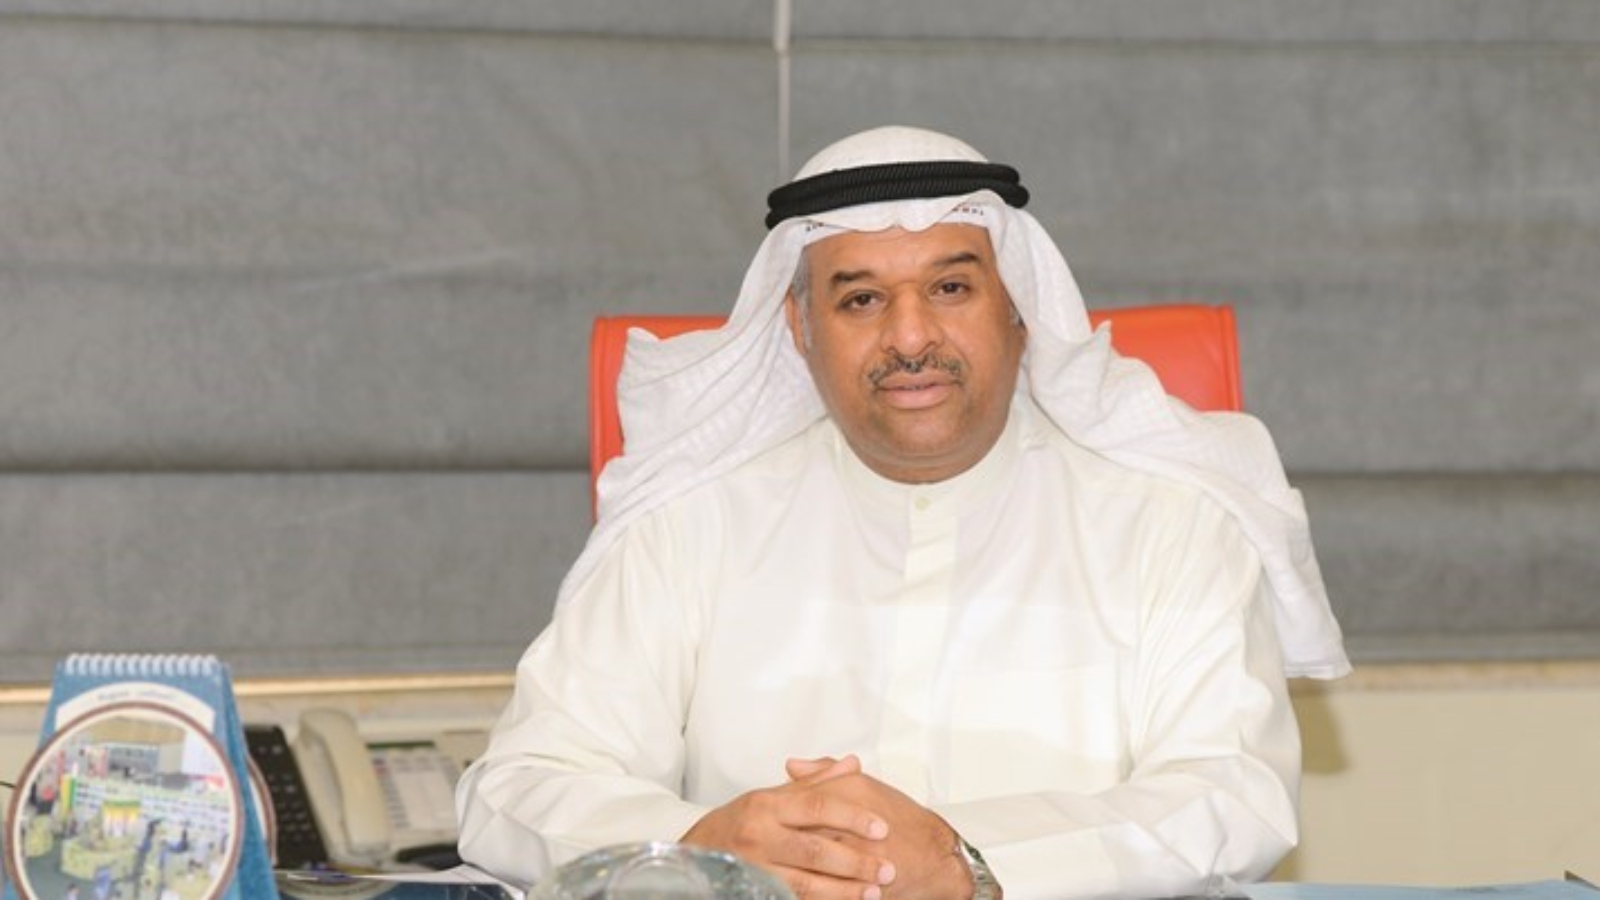 وزير الإعلام يفتتح مؤتمر الكويت للمسؤولية الاجتماعية غداً